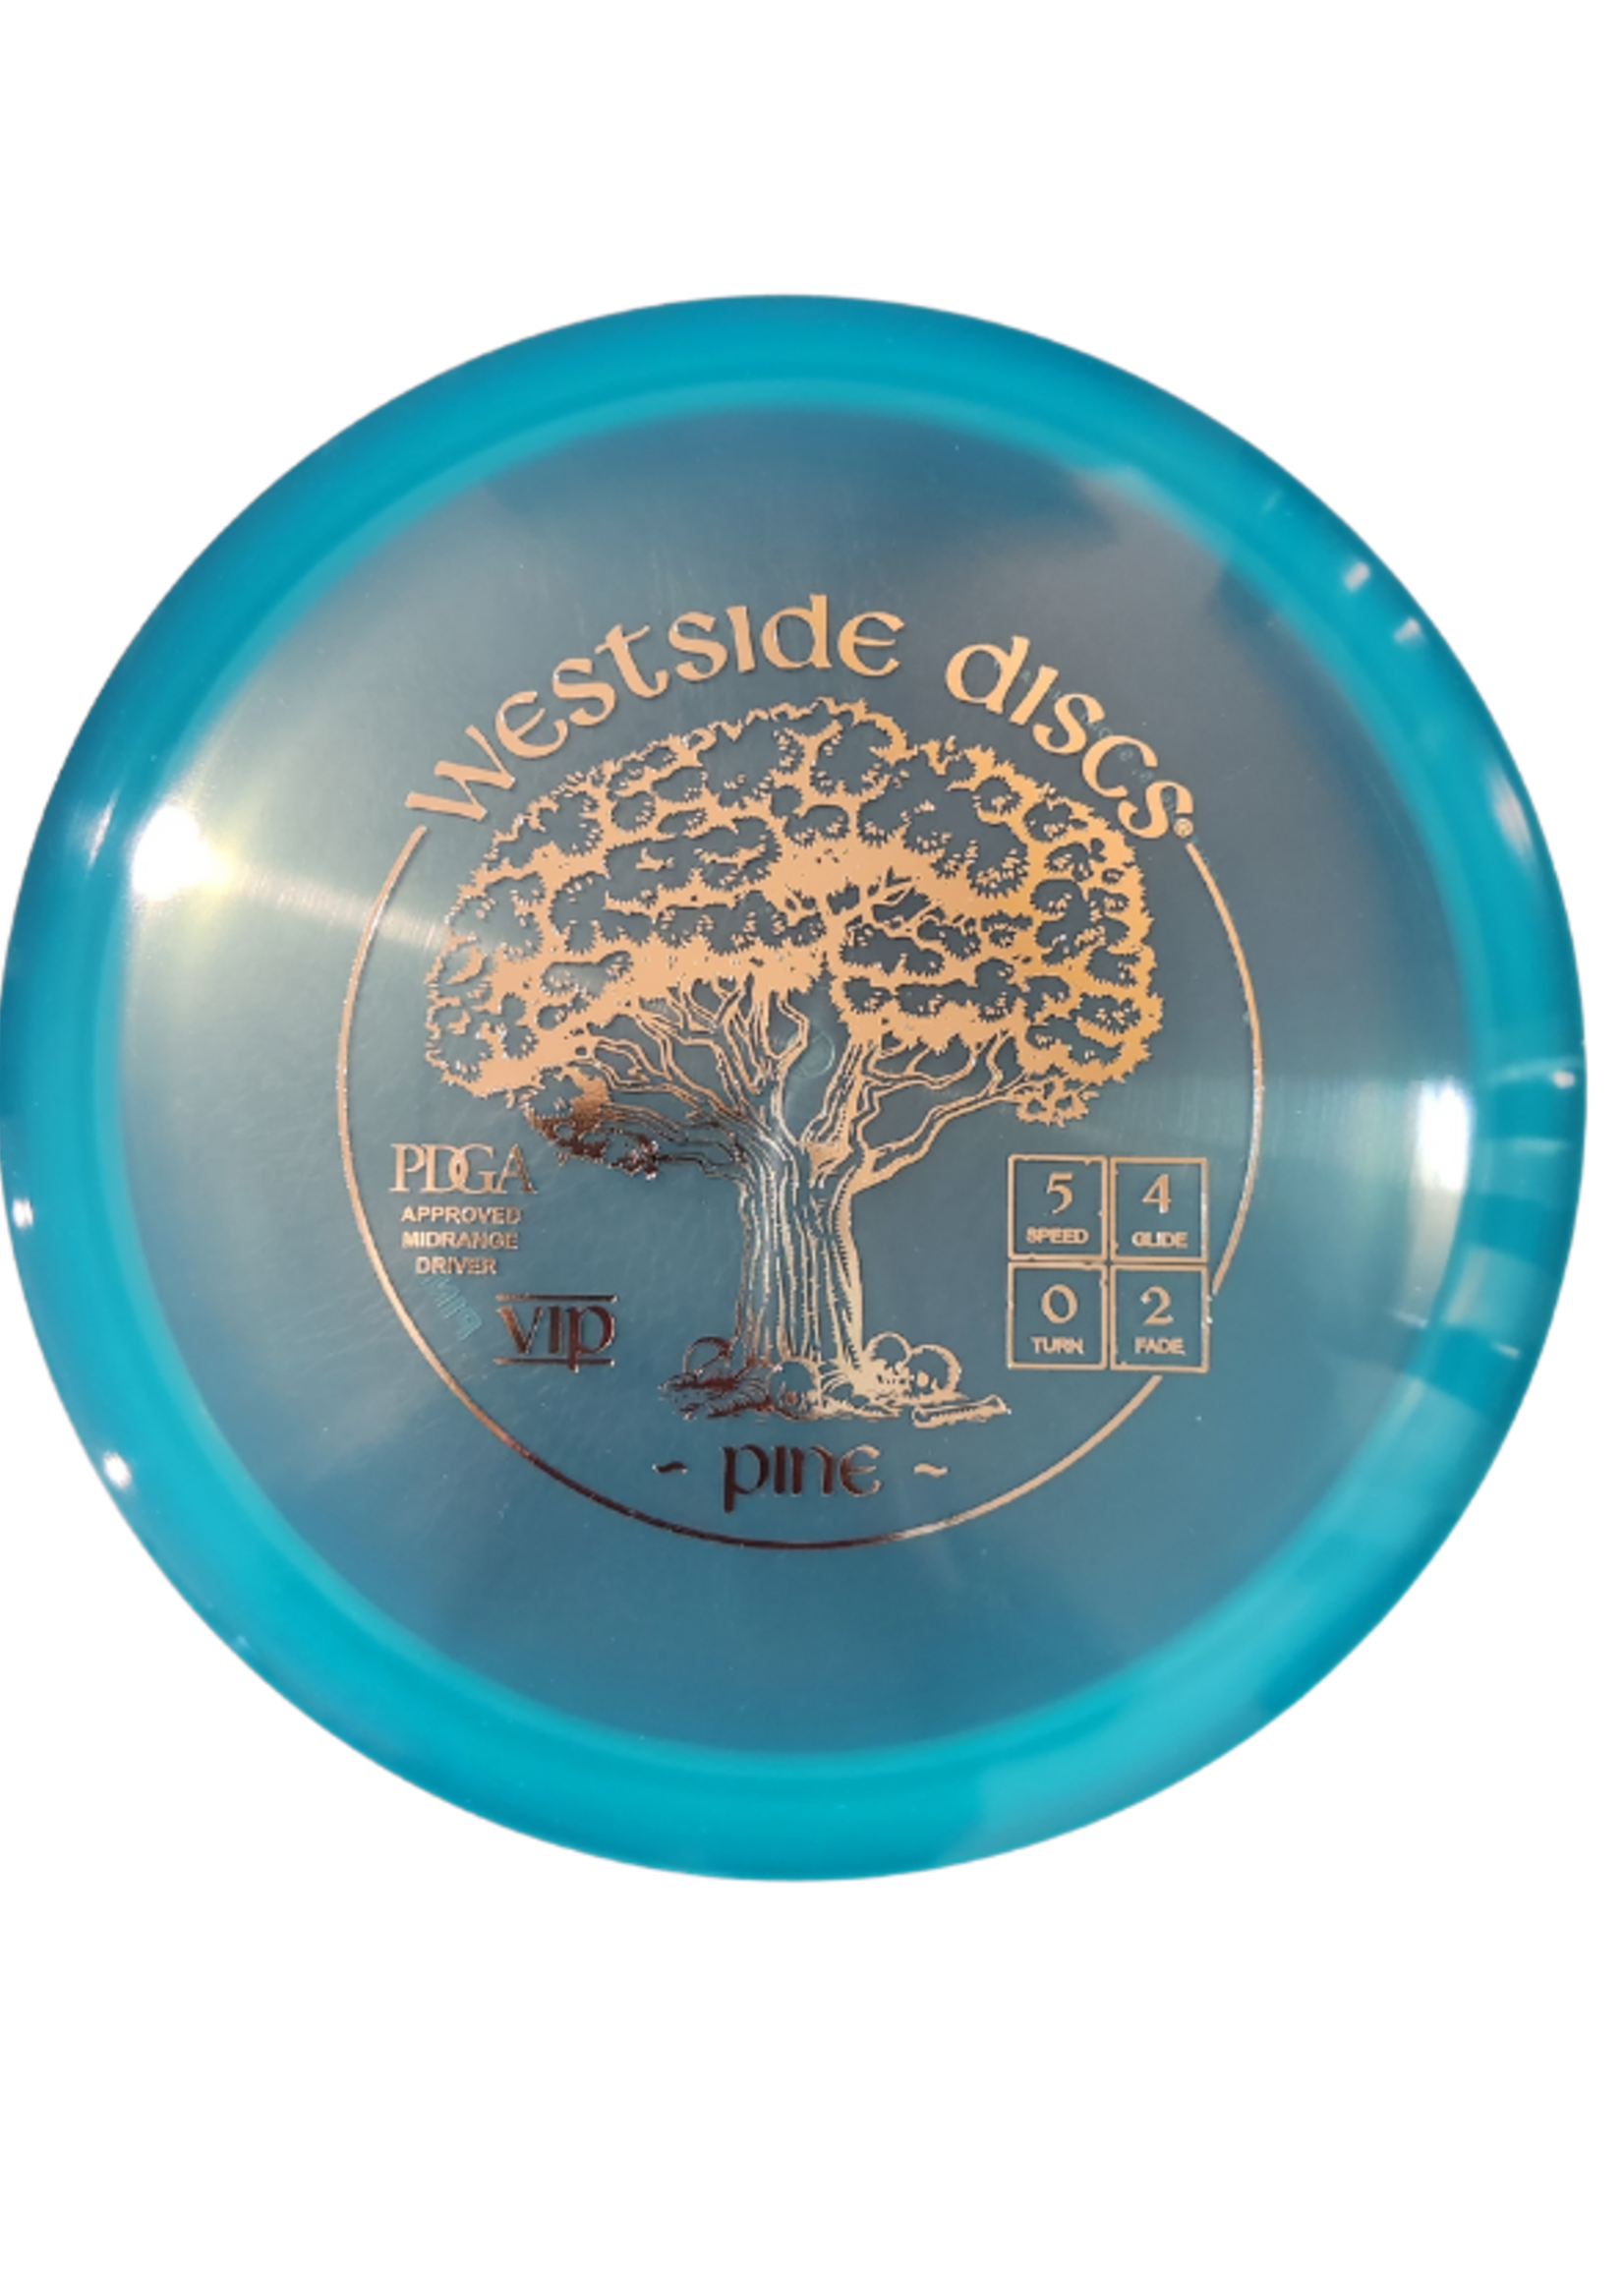 Westside Disc Westside VIP Pine